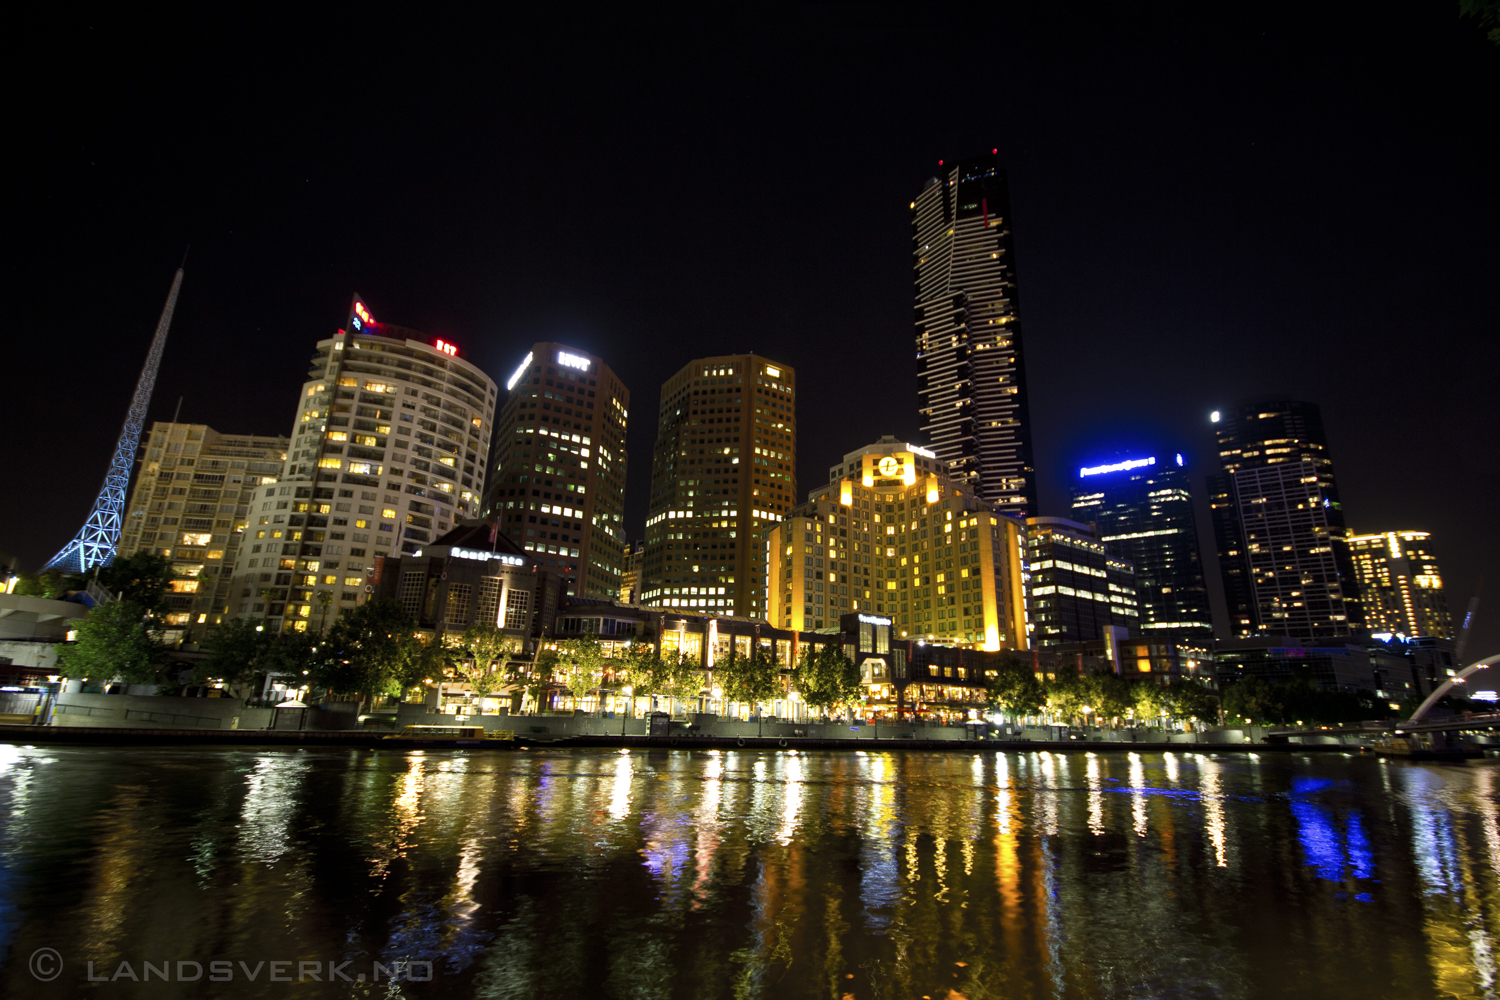 Melbourne at night, Victoria. 

(Canon EOS 550D / Sigma 10-20mm F3.5)